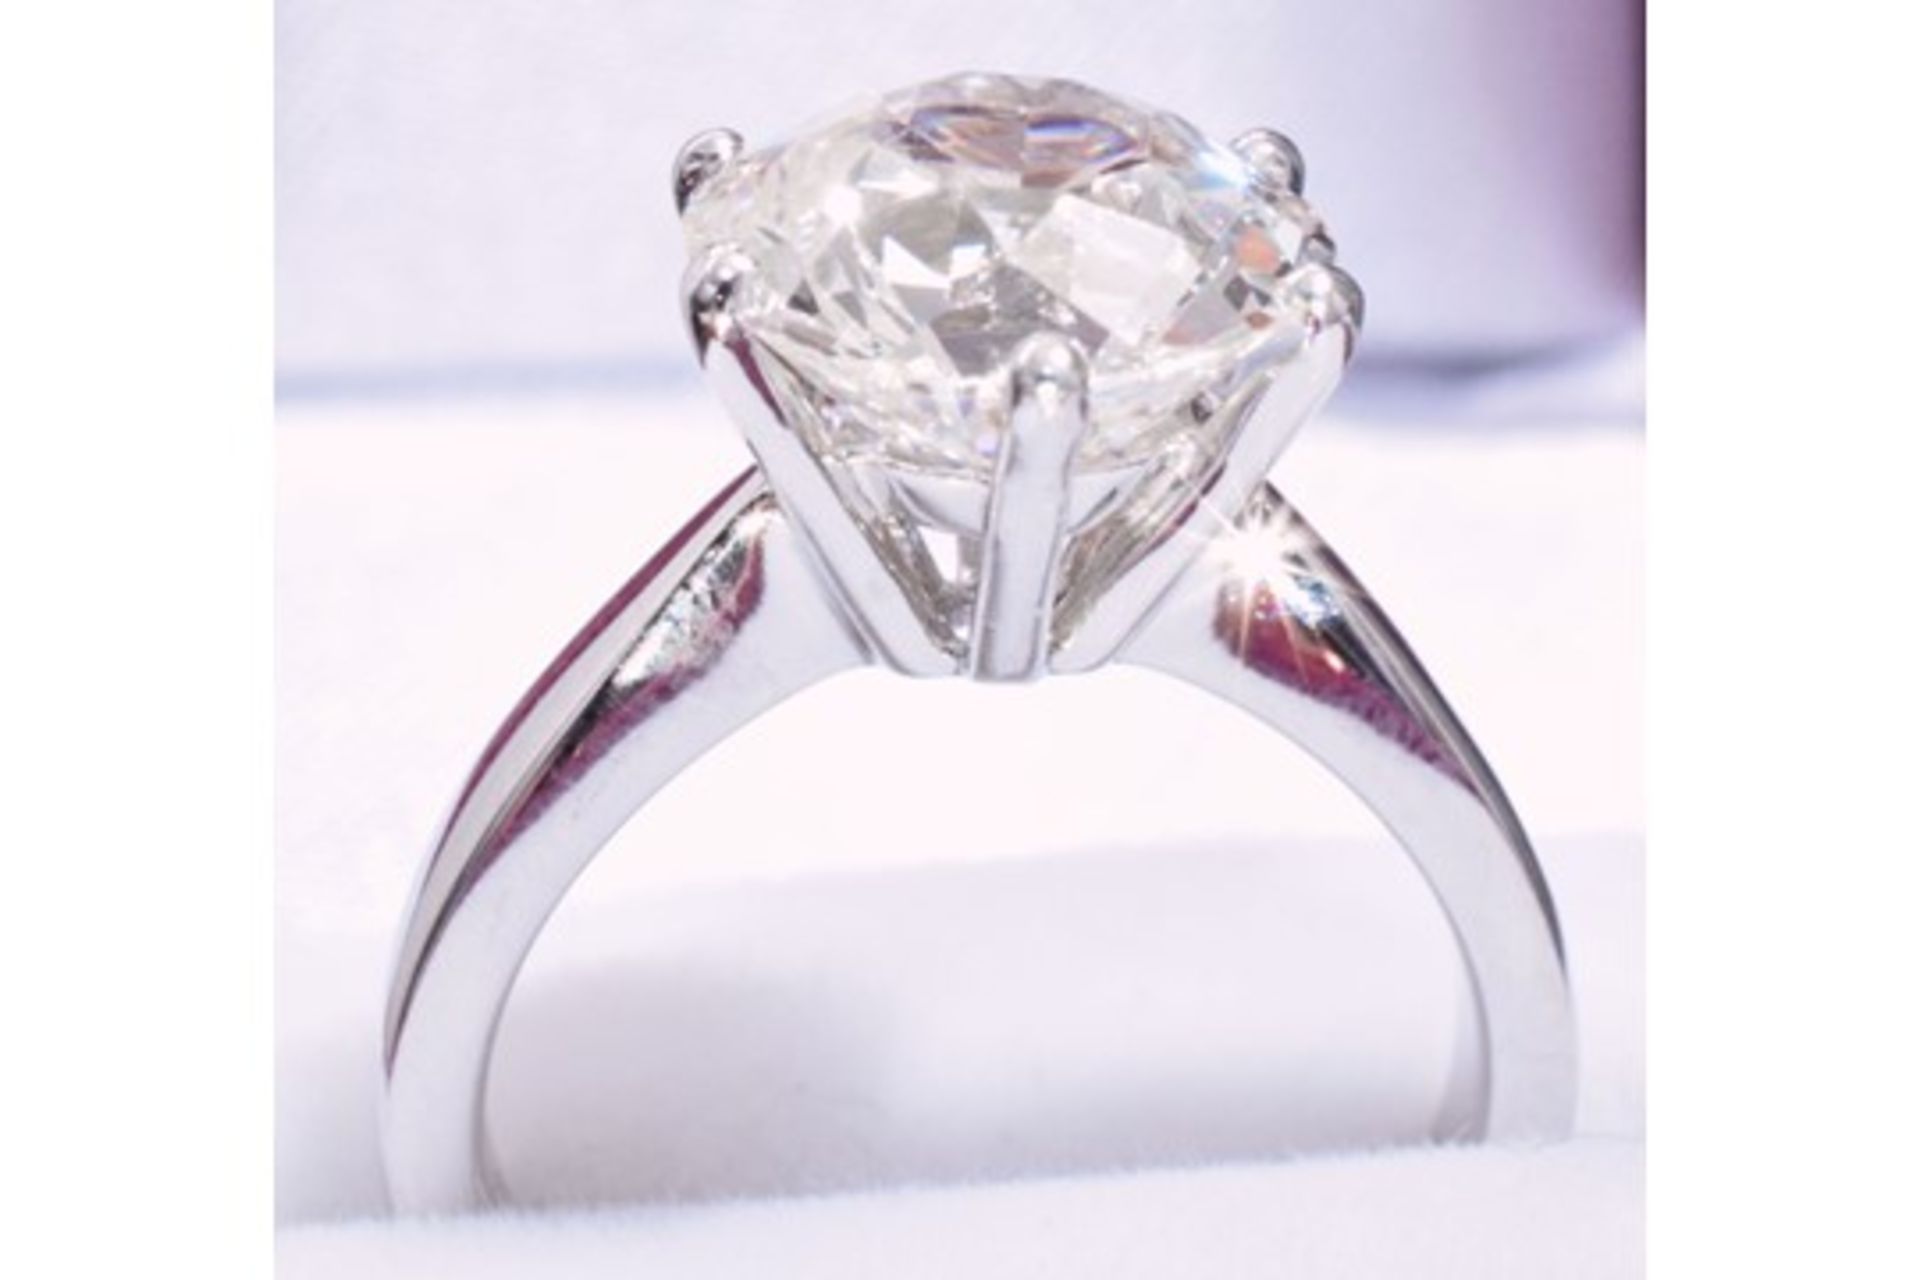 3.70 Carat Diamond Ring Set in White Gold - Image 6 of 8